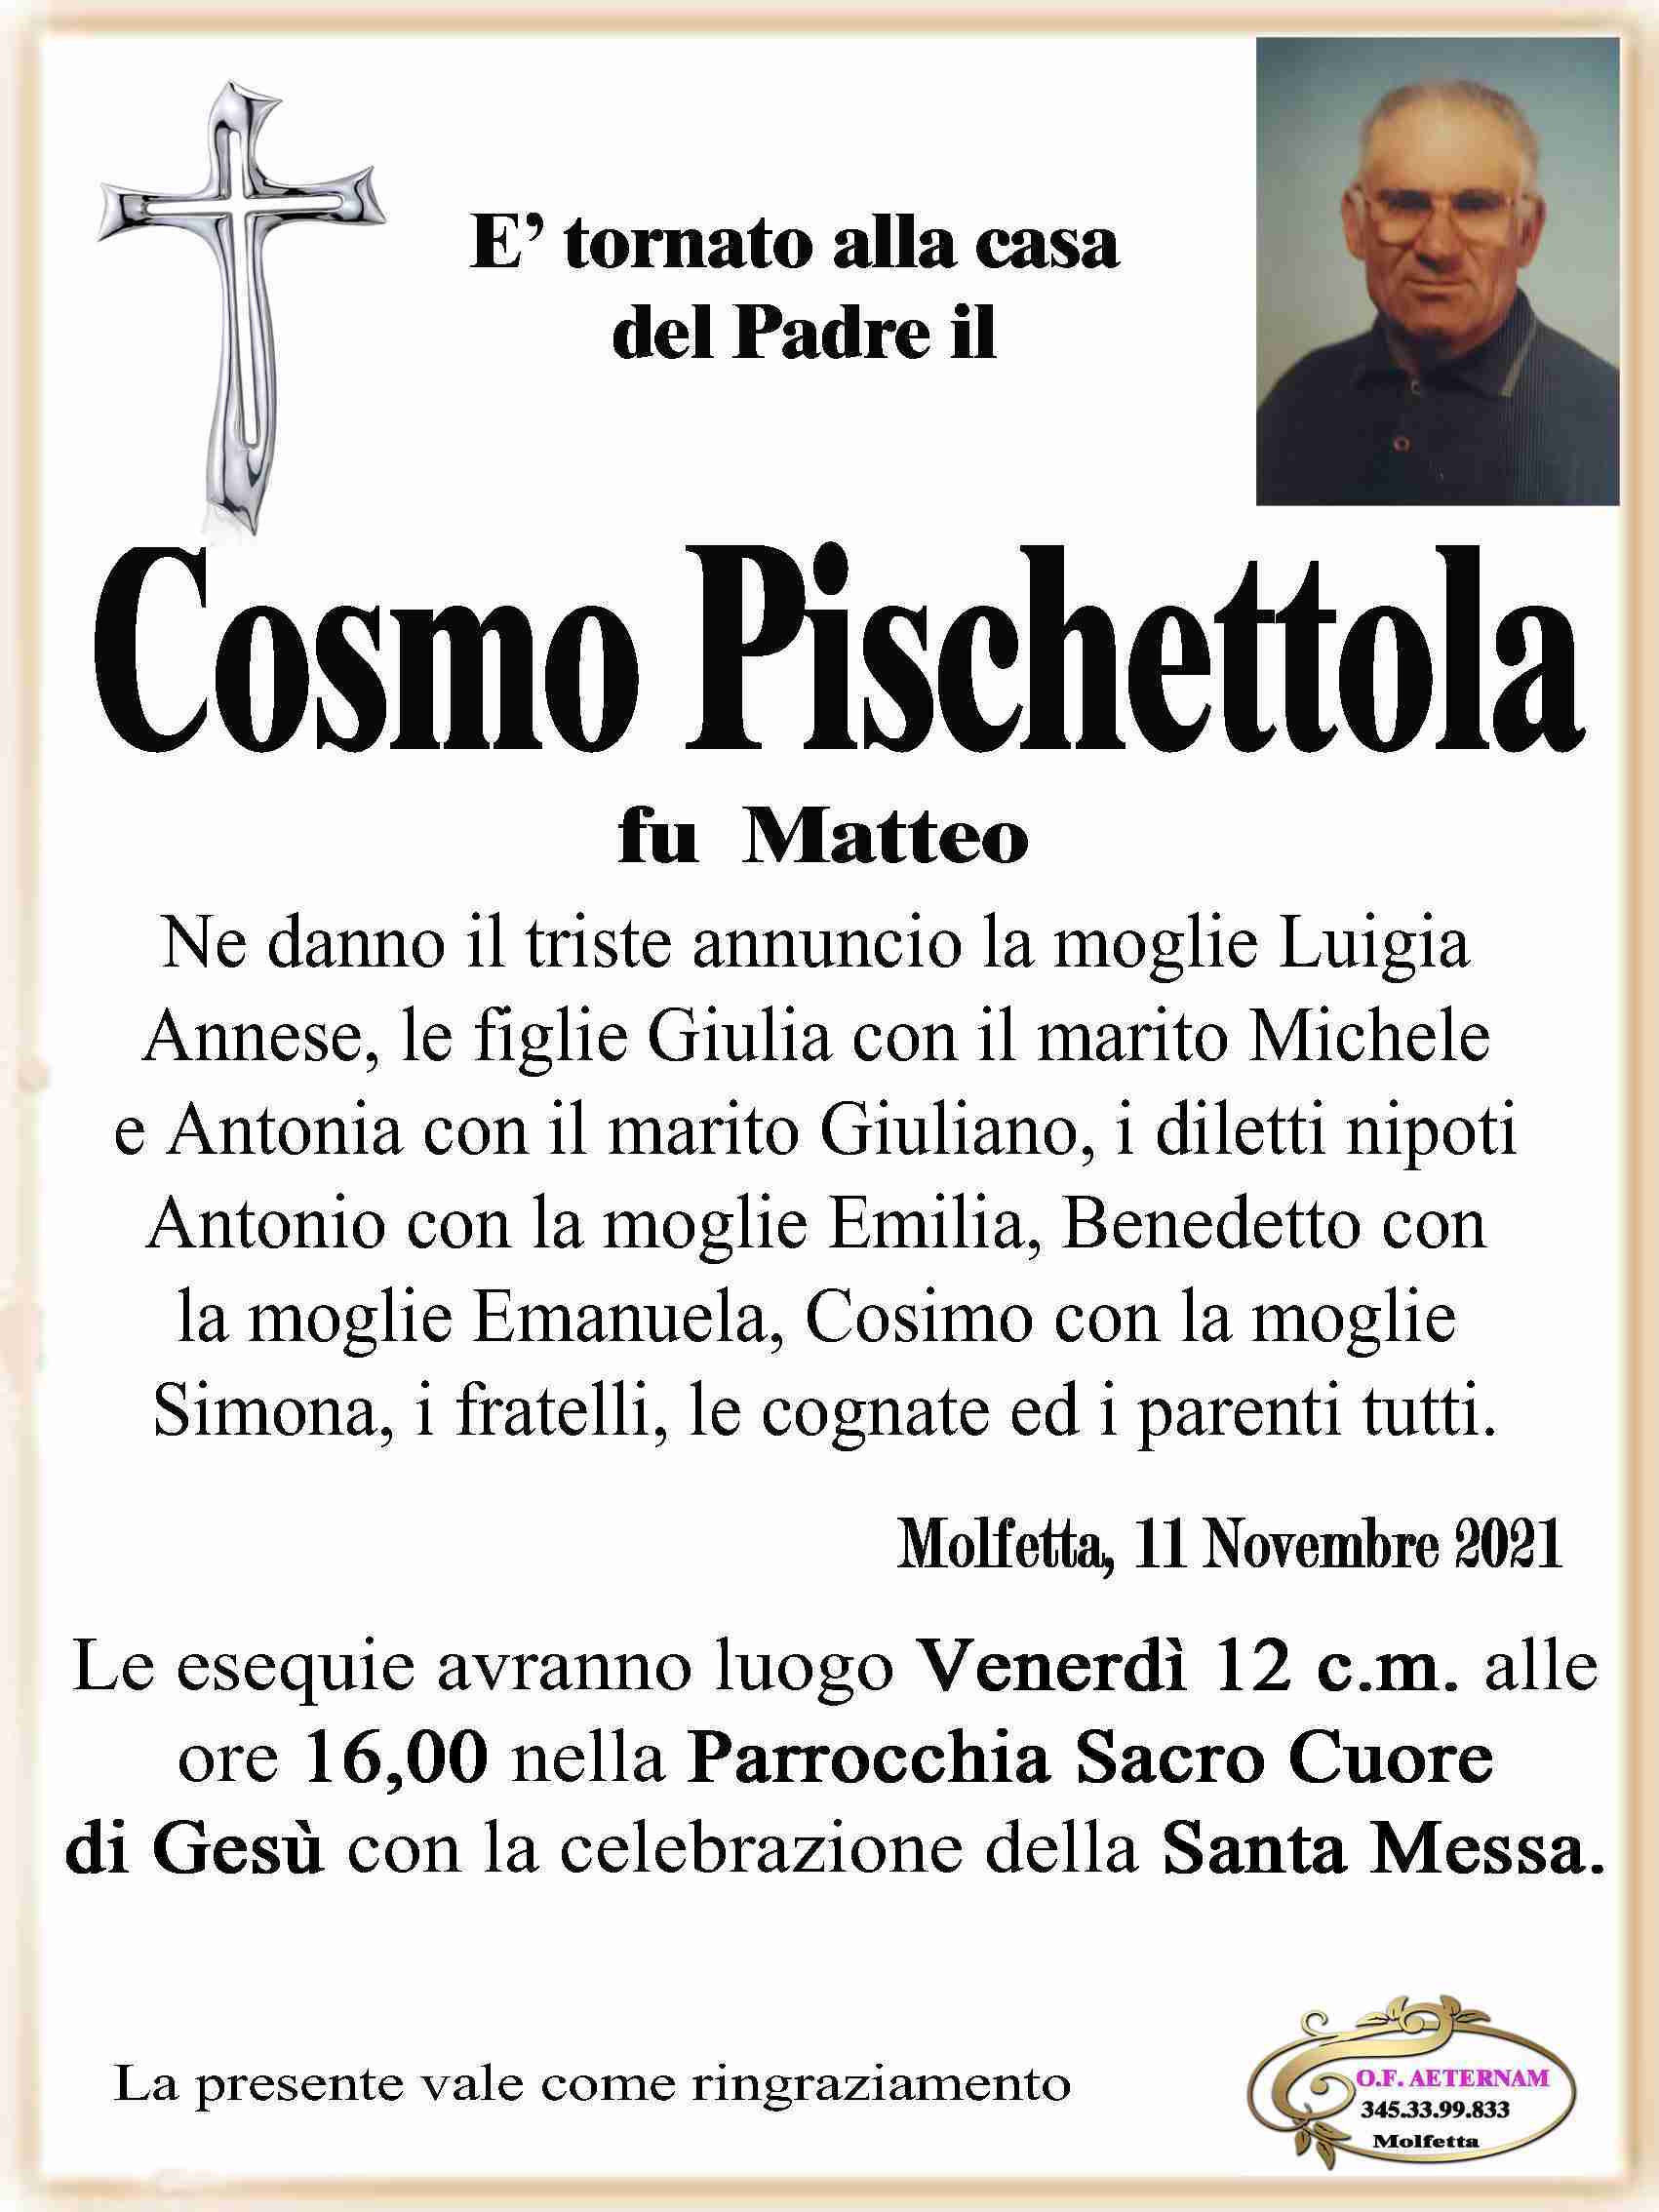 Cosmo Pischettola